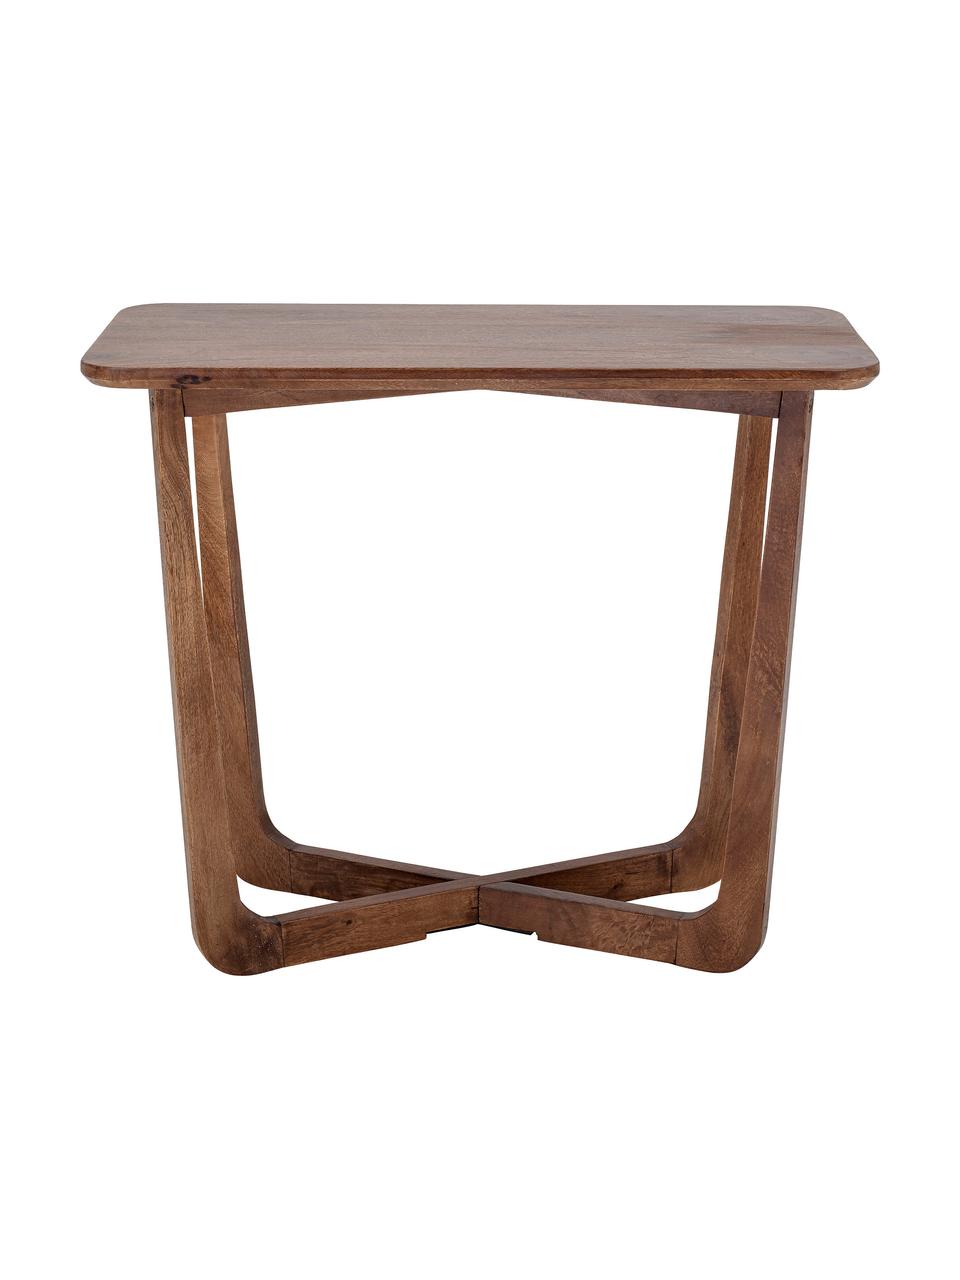 Konzolový stolík z mangového dreva Rine, lakované mangové drevo, Mangové drevo, Š 90 x V 73 cm